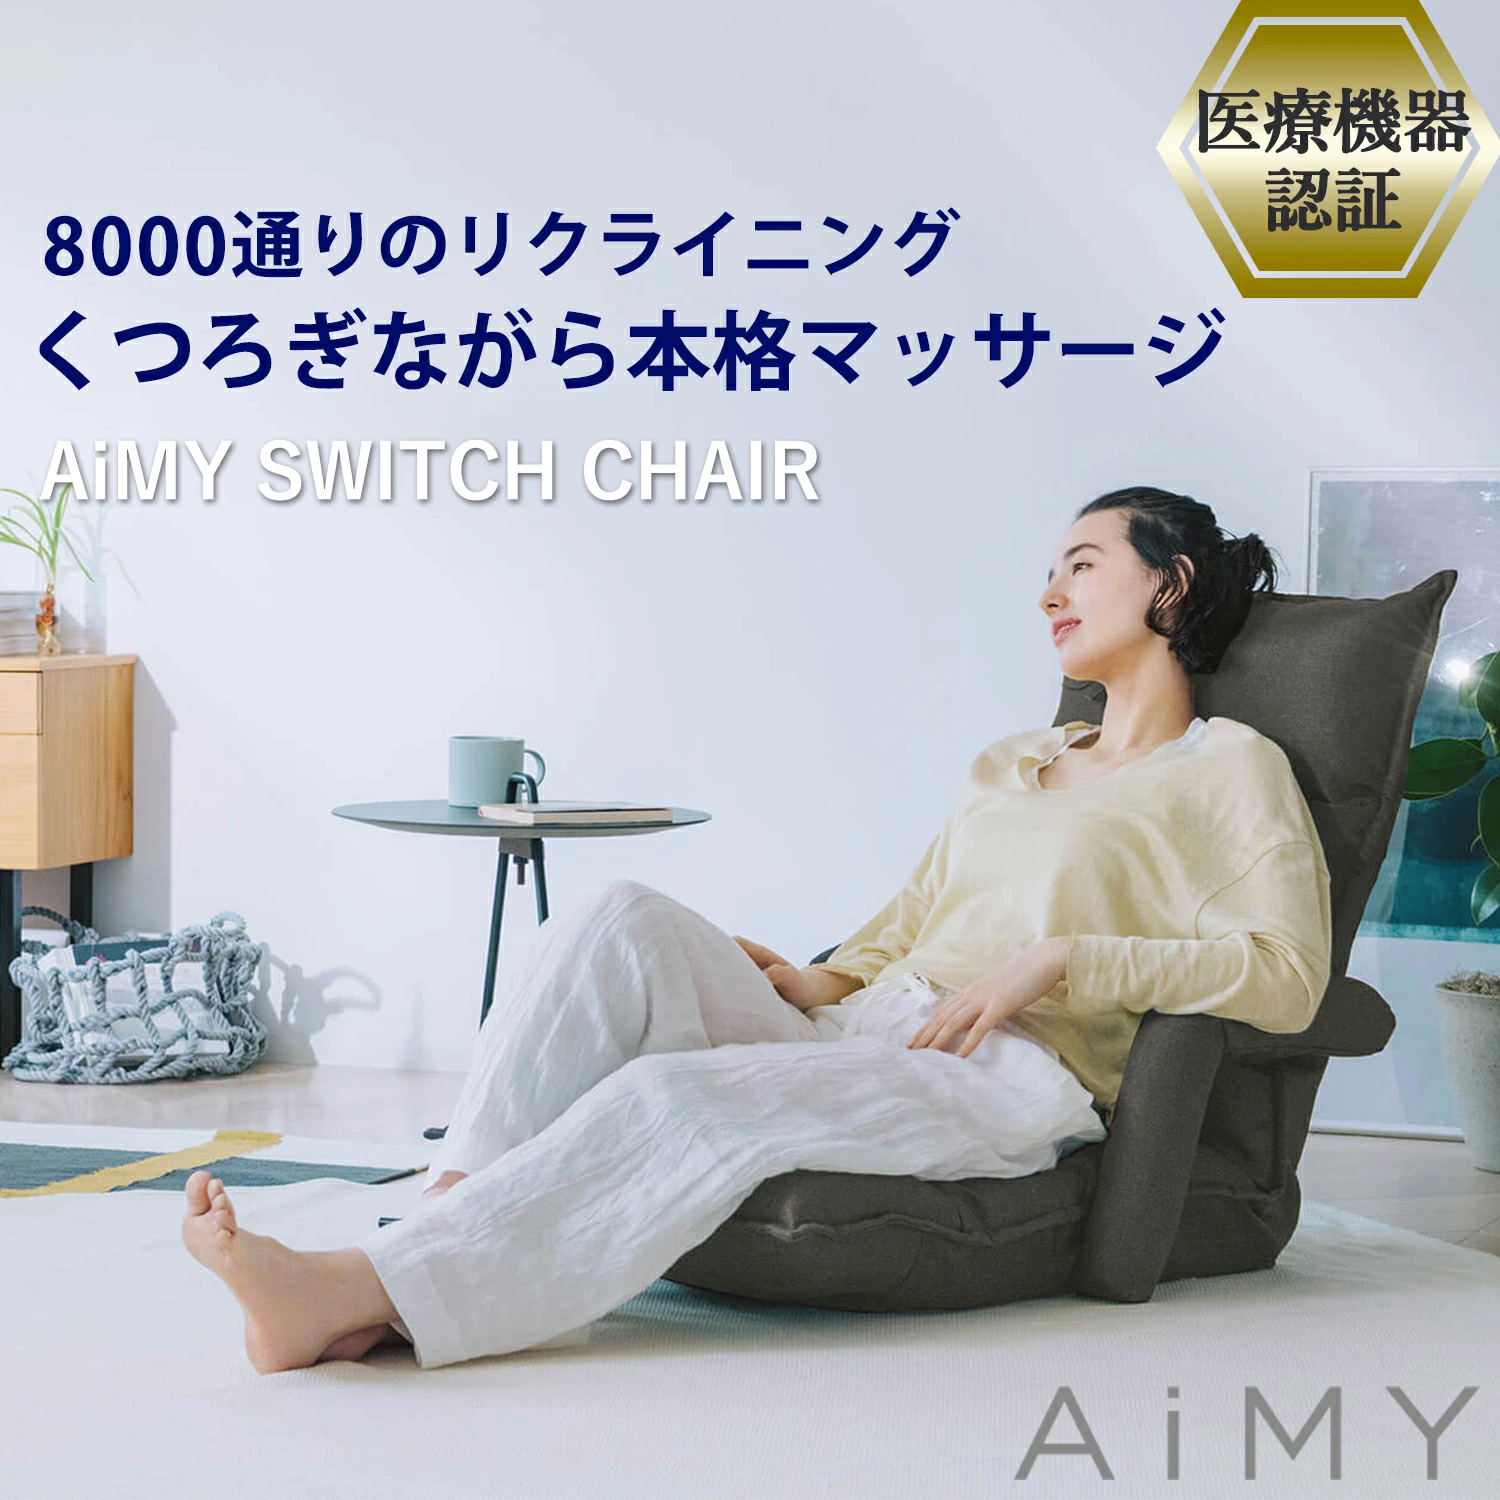 AiMY エイミー スイッチチェア AIM-133 マッサージチェア 座椅子 肘掛付き おしゃれ コンパクト リクライニング マッサージ ヒーター  マッサージ器